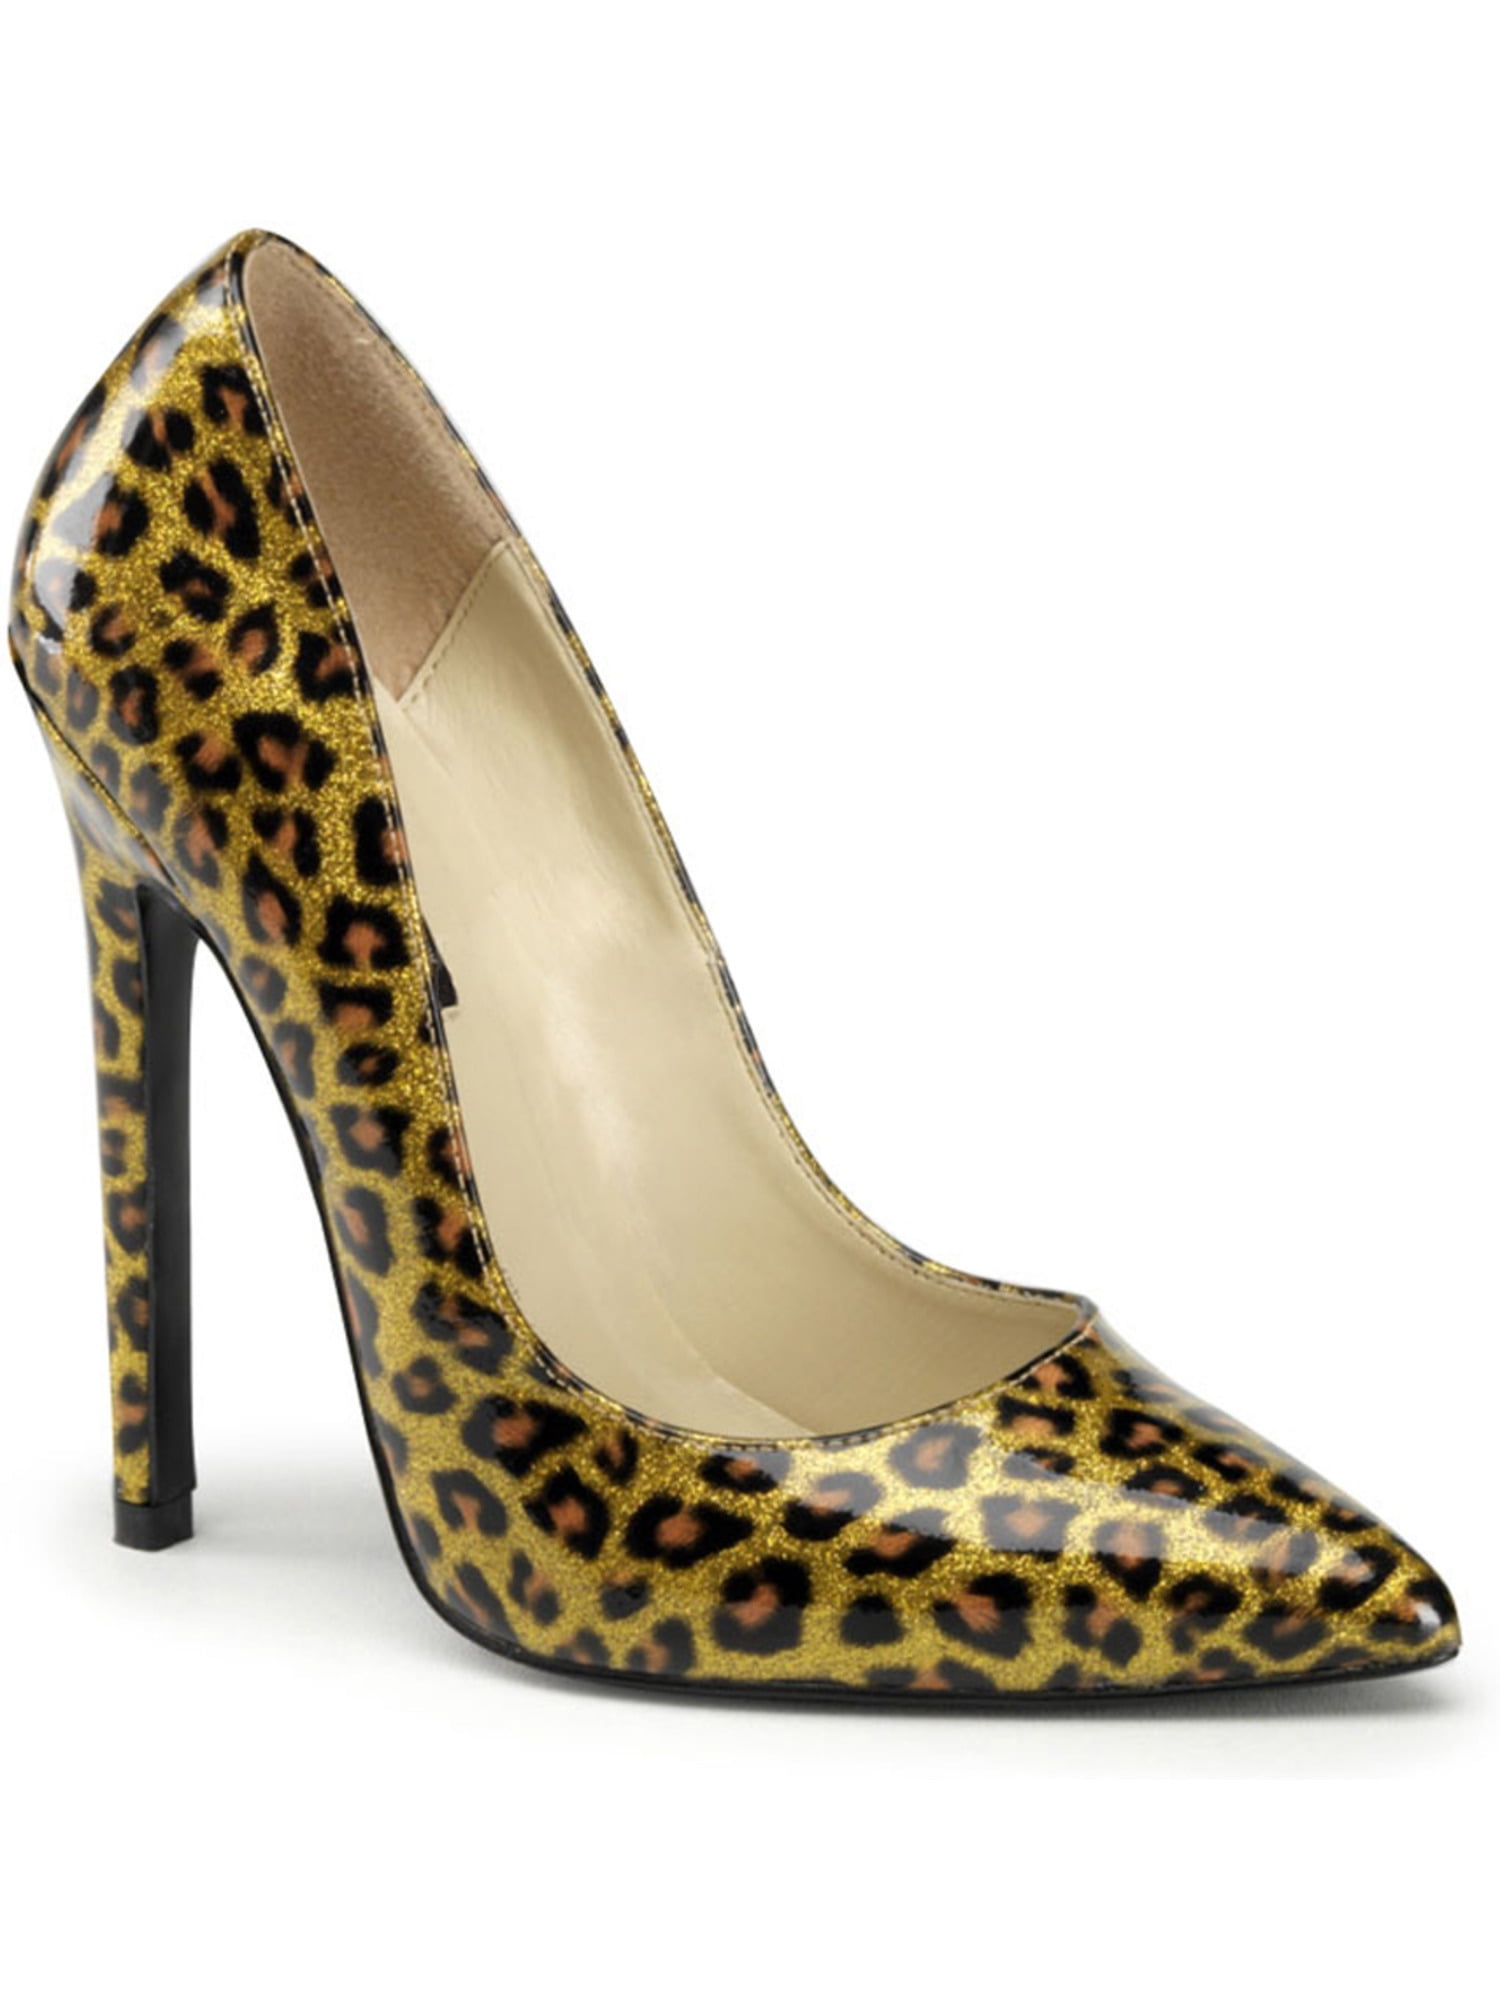 leopard print shoes size 5